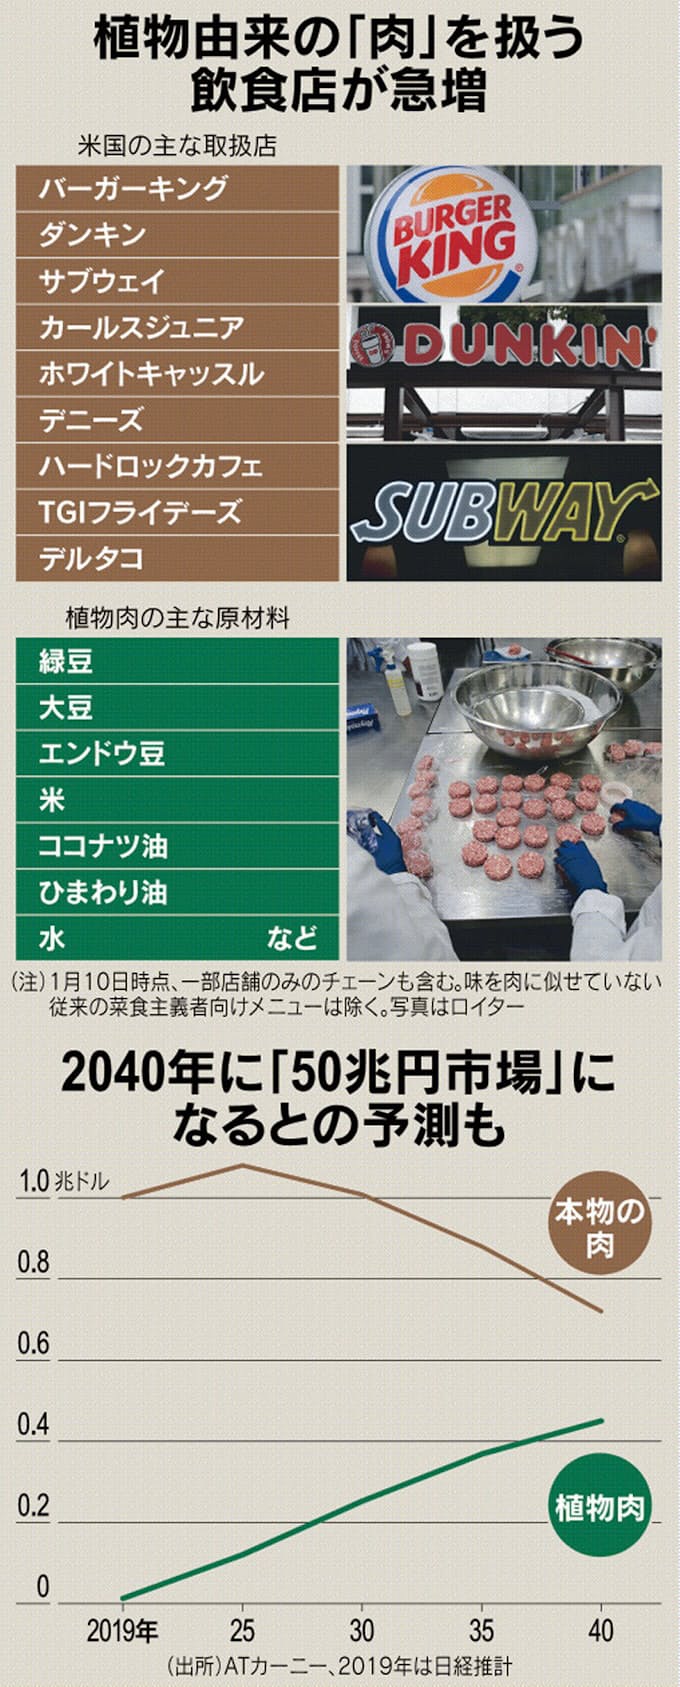 アメリカ発 メシ新時代 肉食文化 アメリカに植物肉革命 イラスト解説 日本経済新聞